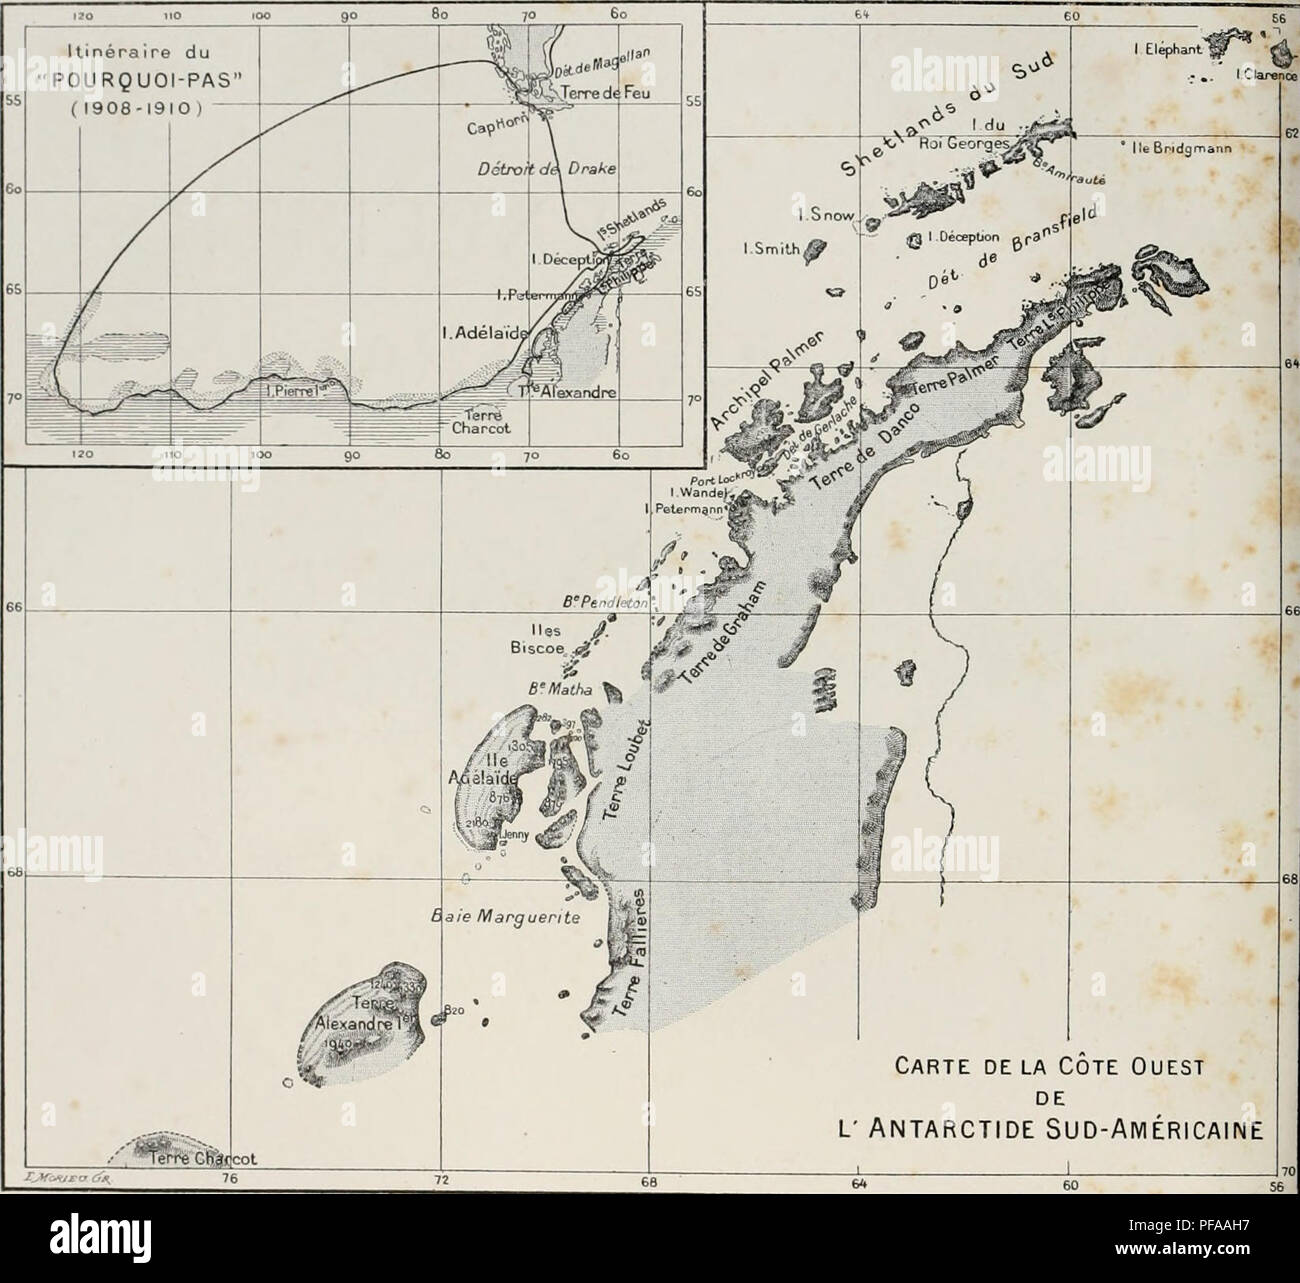 . DeuxiÃ¨me expÃ©dition antarctique francaise (1908-1910). Storia naturale -- Antartide; spedizioni scientifiche -- Antartide; Antartide. Carte delÃ Cote Ouest DE L' ANTARCTIDE SUD-AMÃRICAINE CARTE DES RÃGIONS PARCOURUES ET RELEVÃES PAR L'EXPÃDITION MEMBRES DE LETAT GRANDI DU " POURQUOI PAS " J.-B. CHARCOT M. BONGRAIN Hydrographie, Sismographie, gravitazione terrestre, Osservazioni astronomiques. L. CiAIN Zoologie (Spongiaires, Echinodermes. Arthropodes. Oiseaux et teur&amp; parassiti) plancton, Botanique. R.-E. GODFROY MarÃ©es, Tofographie Cà'tiÃ¨re. Chimie de Tair. E. GOURDON ... . Foto Stock